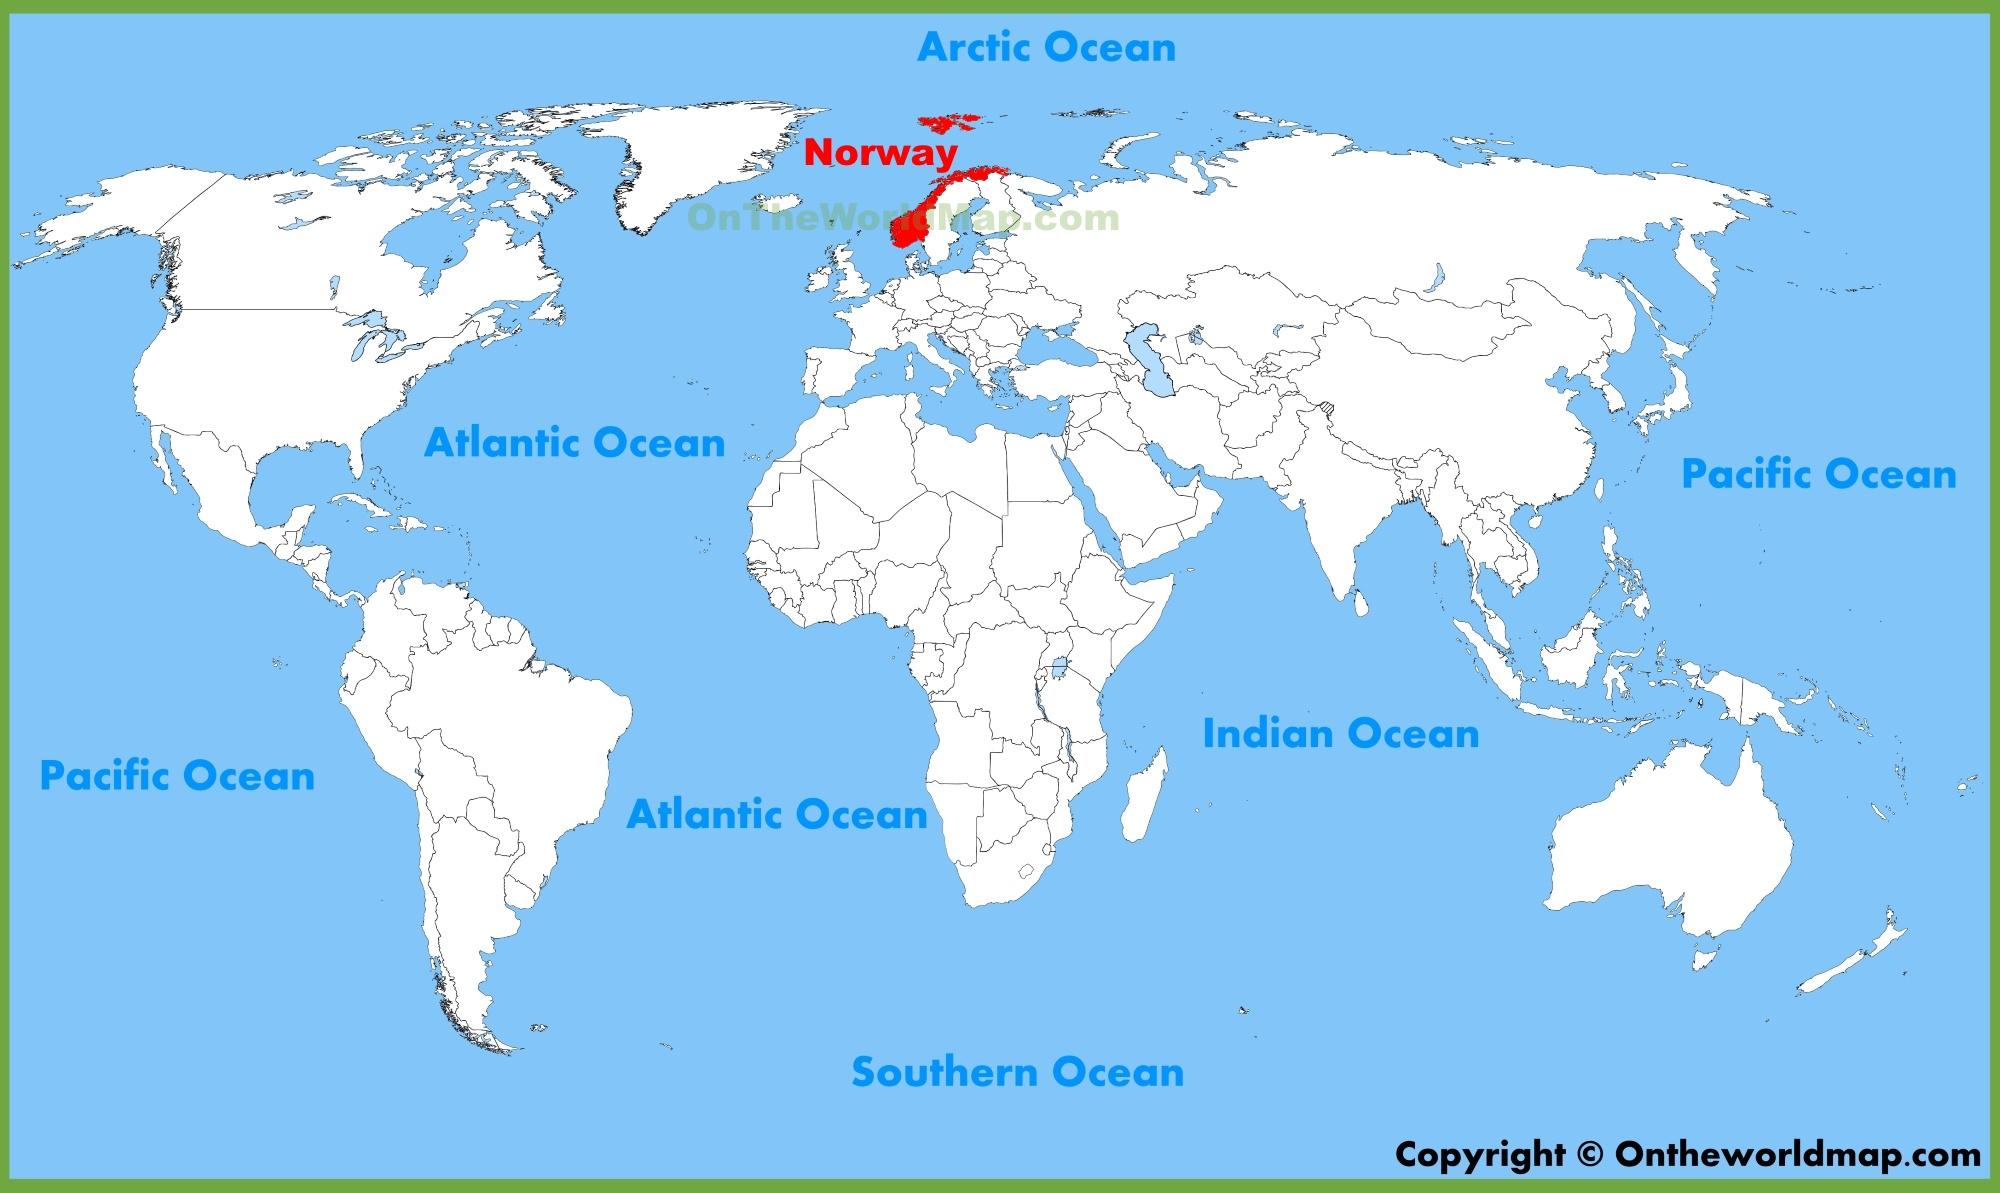 Na Uy trên bản đồ thế giới đã trở nên sáng tỏ hơn với các tuyến đường đi lại mới, những khu công nghiệp hiện đại và các điểm du lịch đang được nhiều người yêu thích. Hãy cùng chiêm ngưỡng vẻ đẹp nước Na Uy qua hình ảnh trên bản đồ!